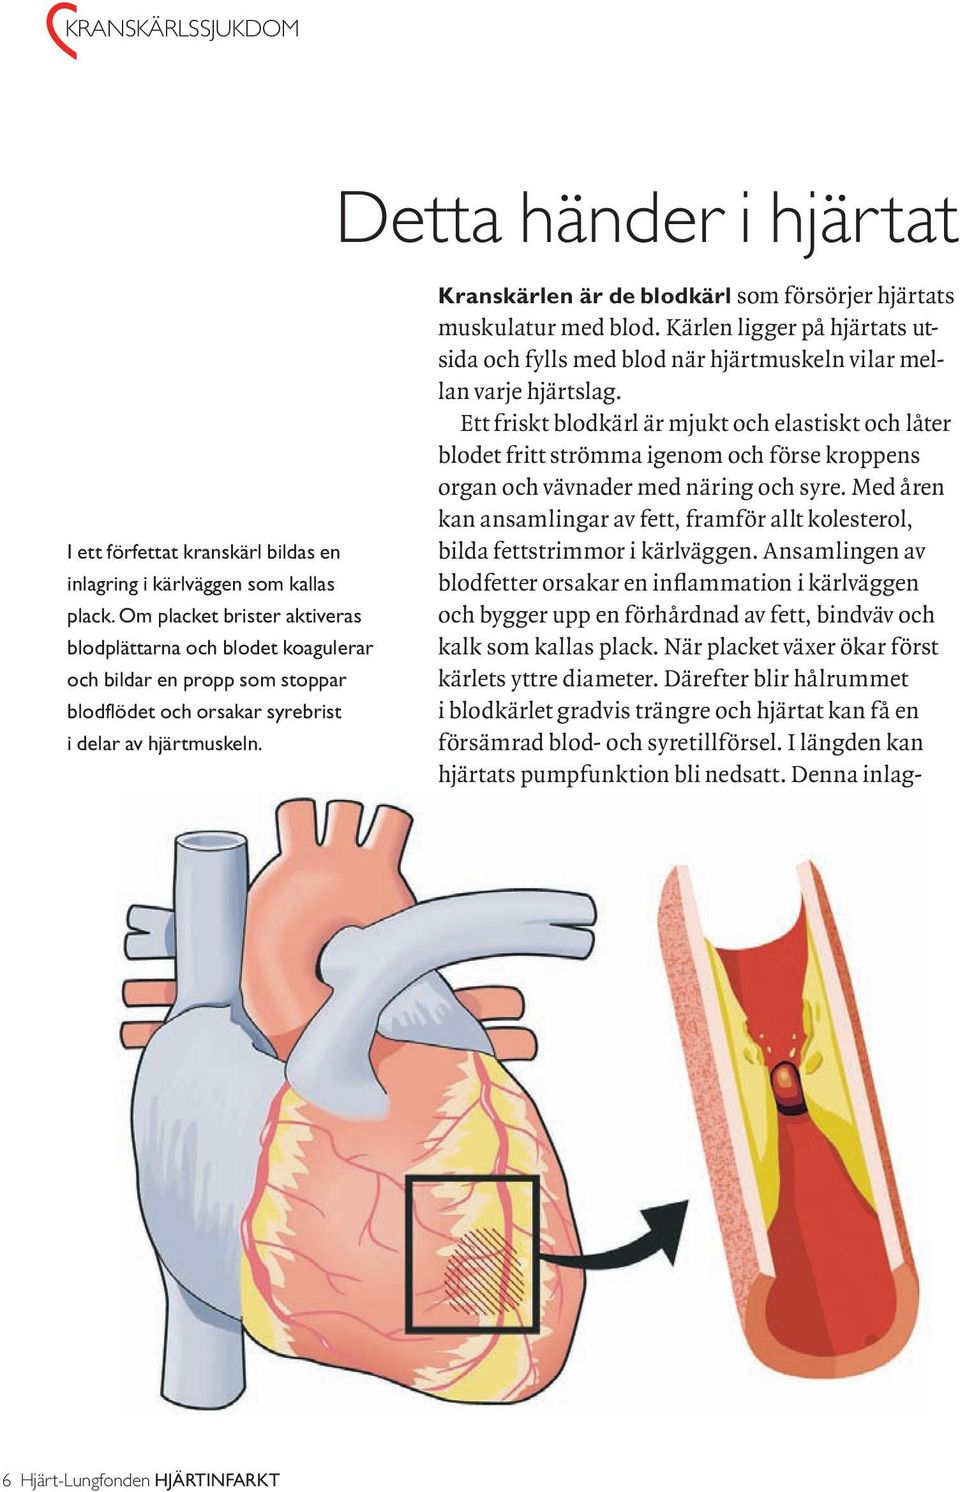 Kranskärlen är de blodkärl som försörjer hjärtats muskulatur med blod. Kärlen ligger på hjärtats utsida och fylls med blod när hjärtmuskeln vilar mellan varje hjärtslag.